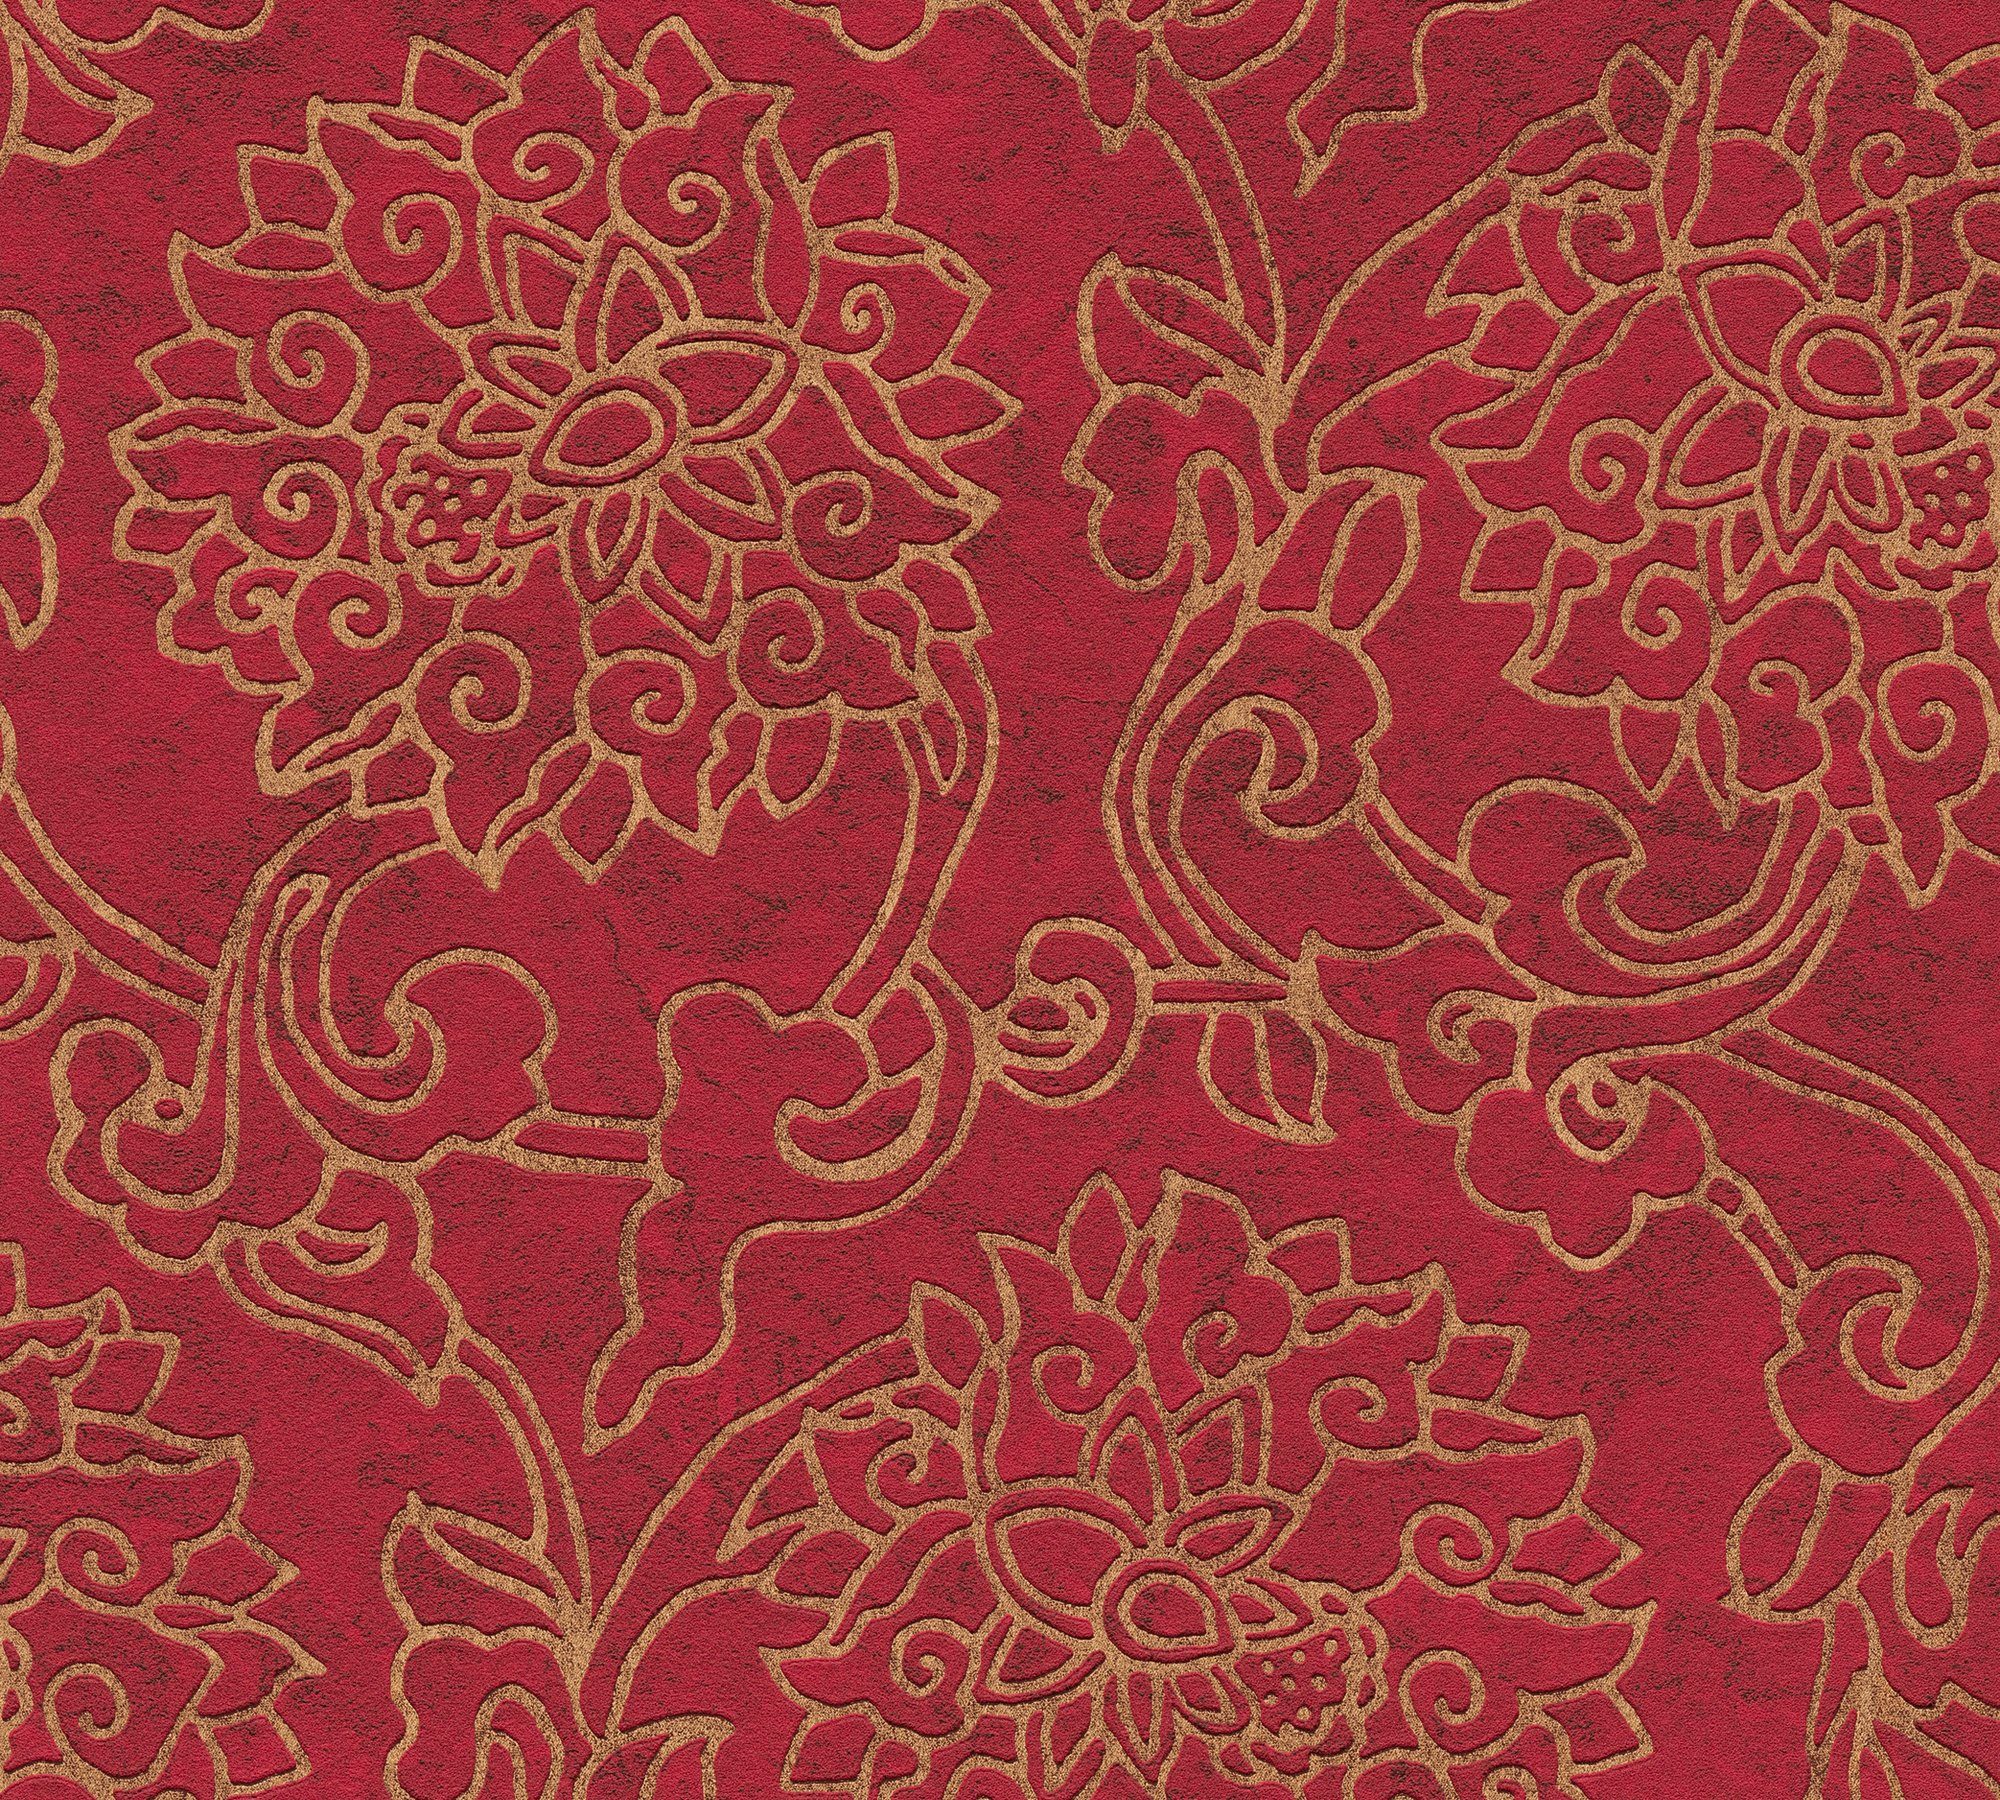 Création blutrot/gold A.S. Ornament ornamental, gemustert, aufgeschäumt, Vliestapete Asian Japanisch Tapete Fusion,